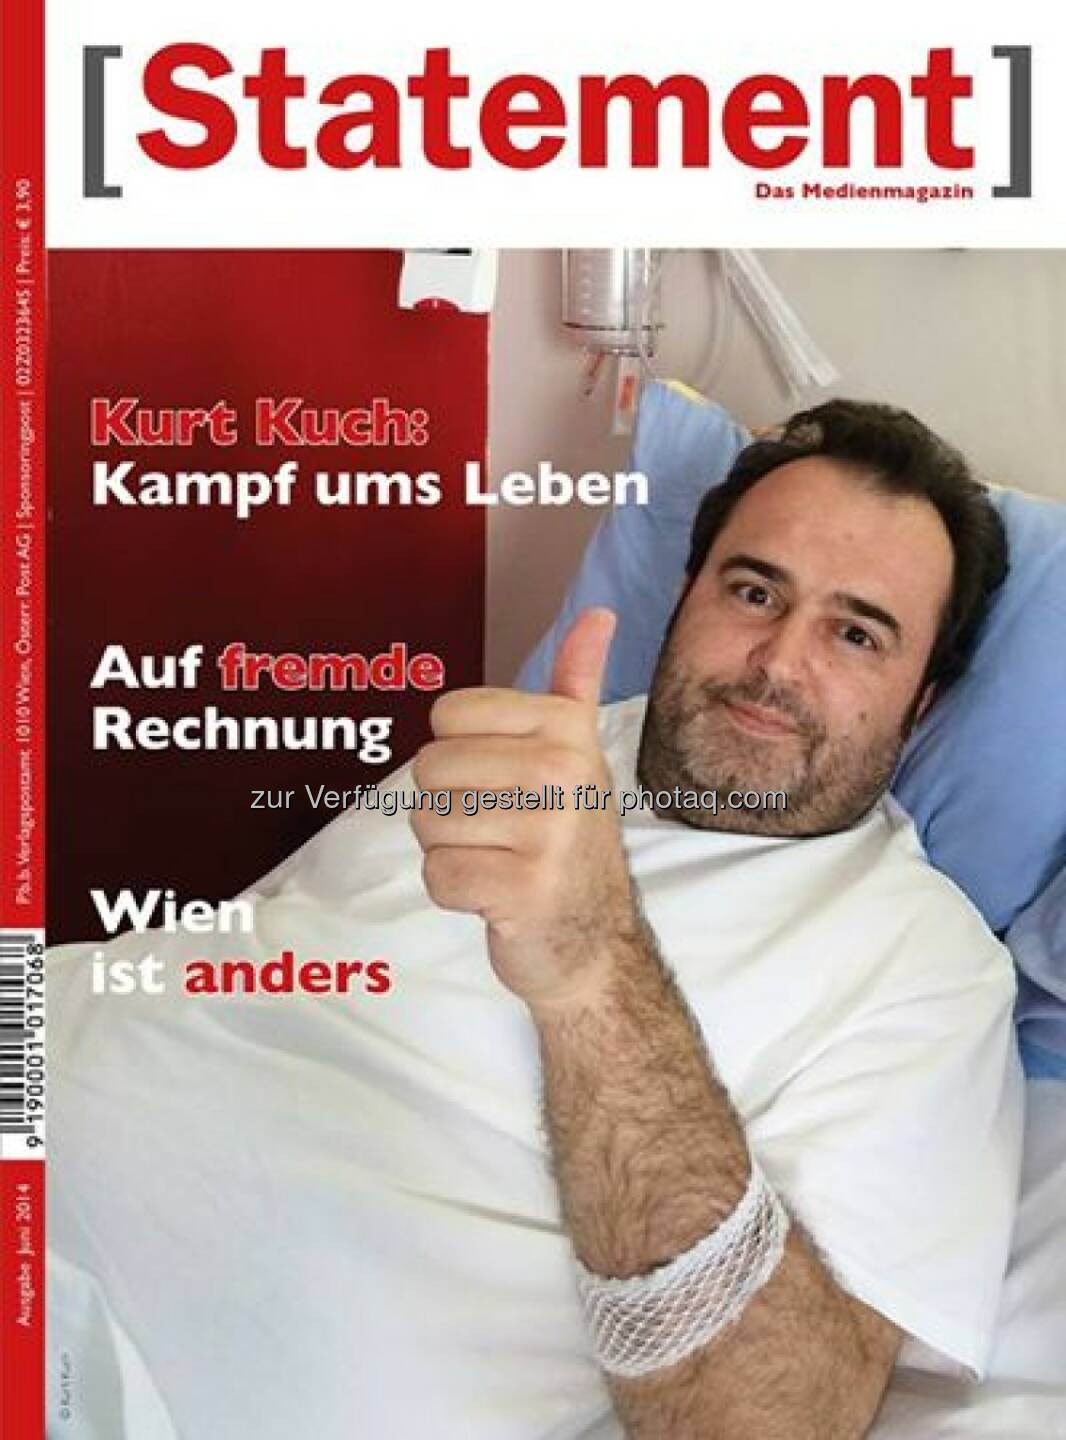 Österreichischer Journalisten Club: Das Medienmagazin [Statement] bringt ein berührendes Interview über den beeindruckenden Lebenswillen mit Kurt Kuch